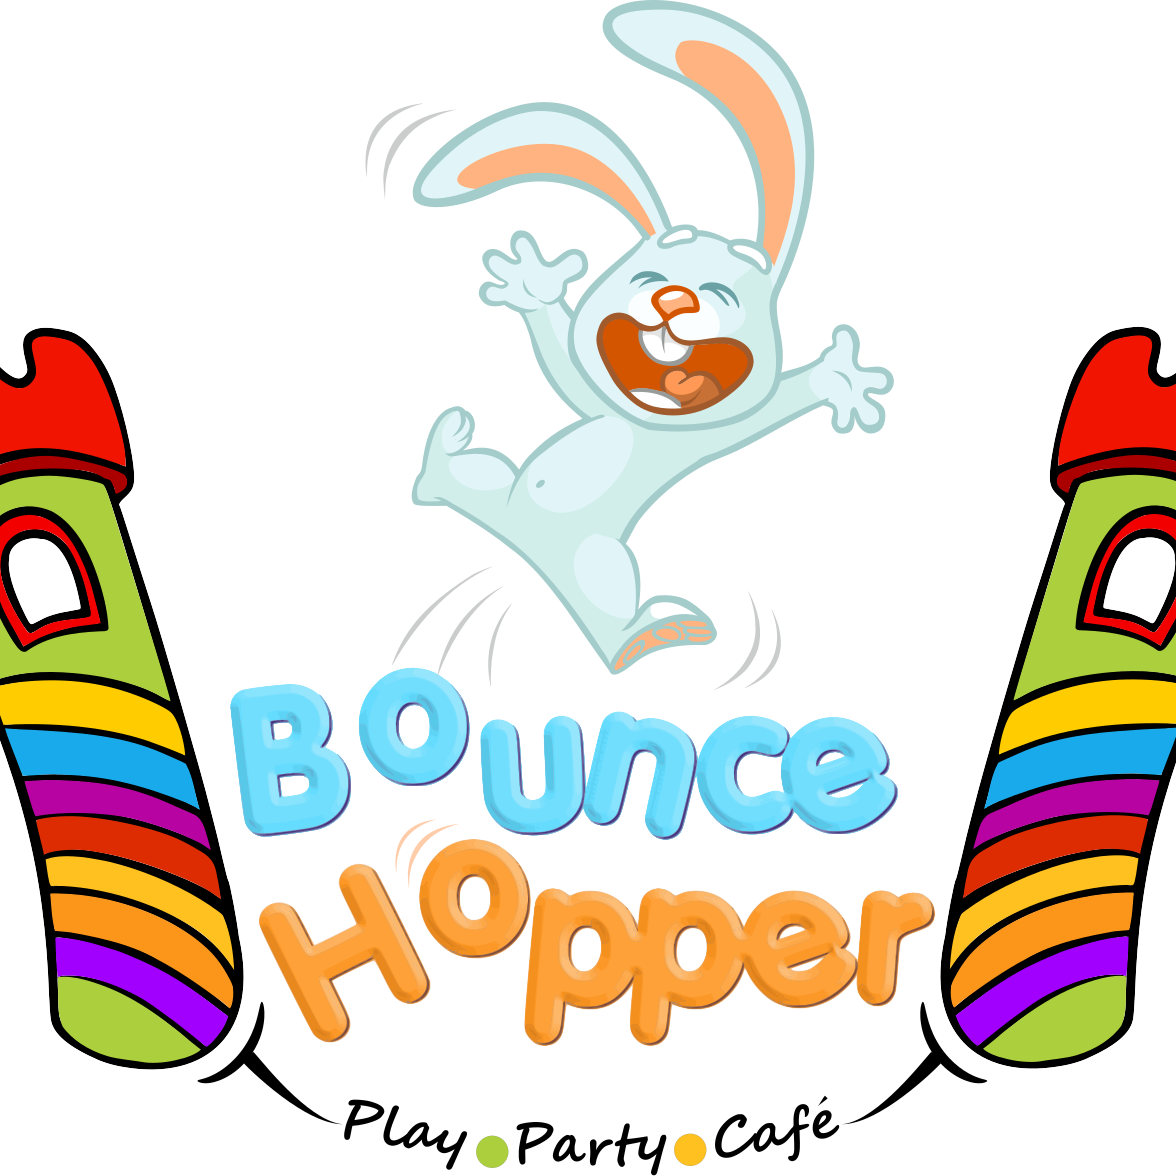 Bounce Hopper|Adventure Park|Entertainment